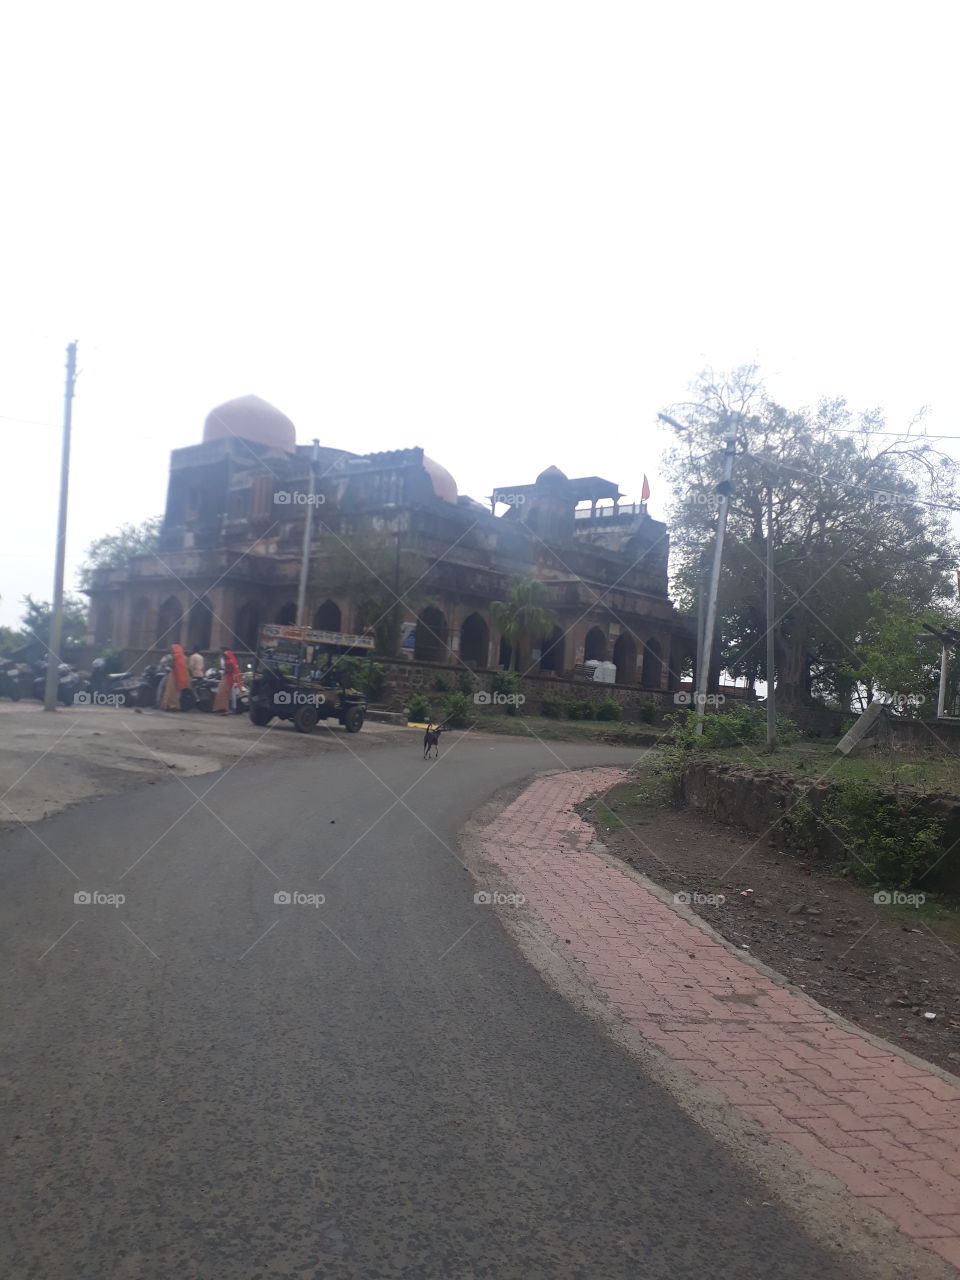 K.D. palace of ujjain